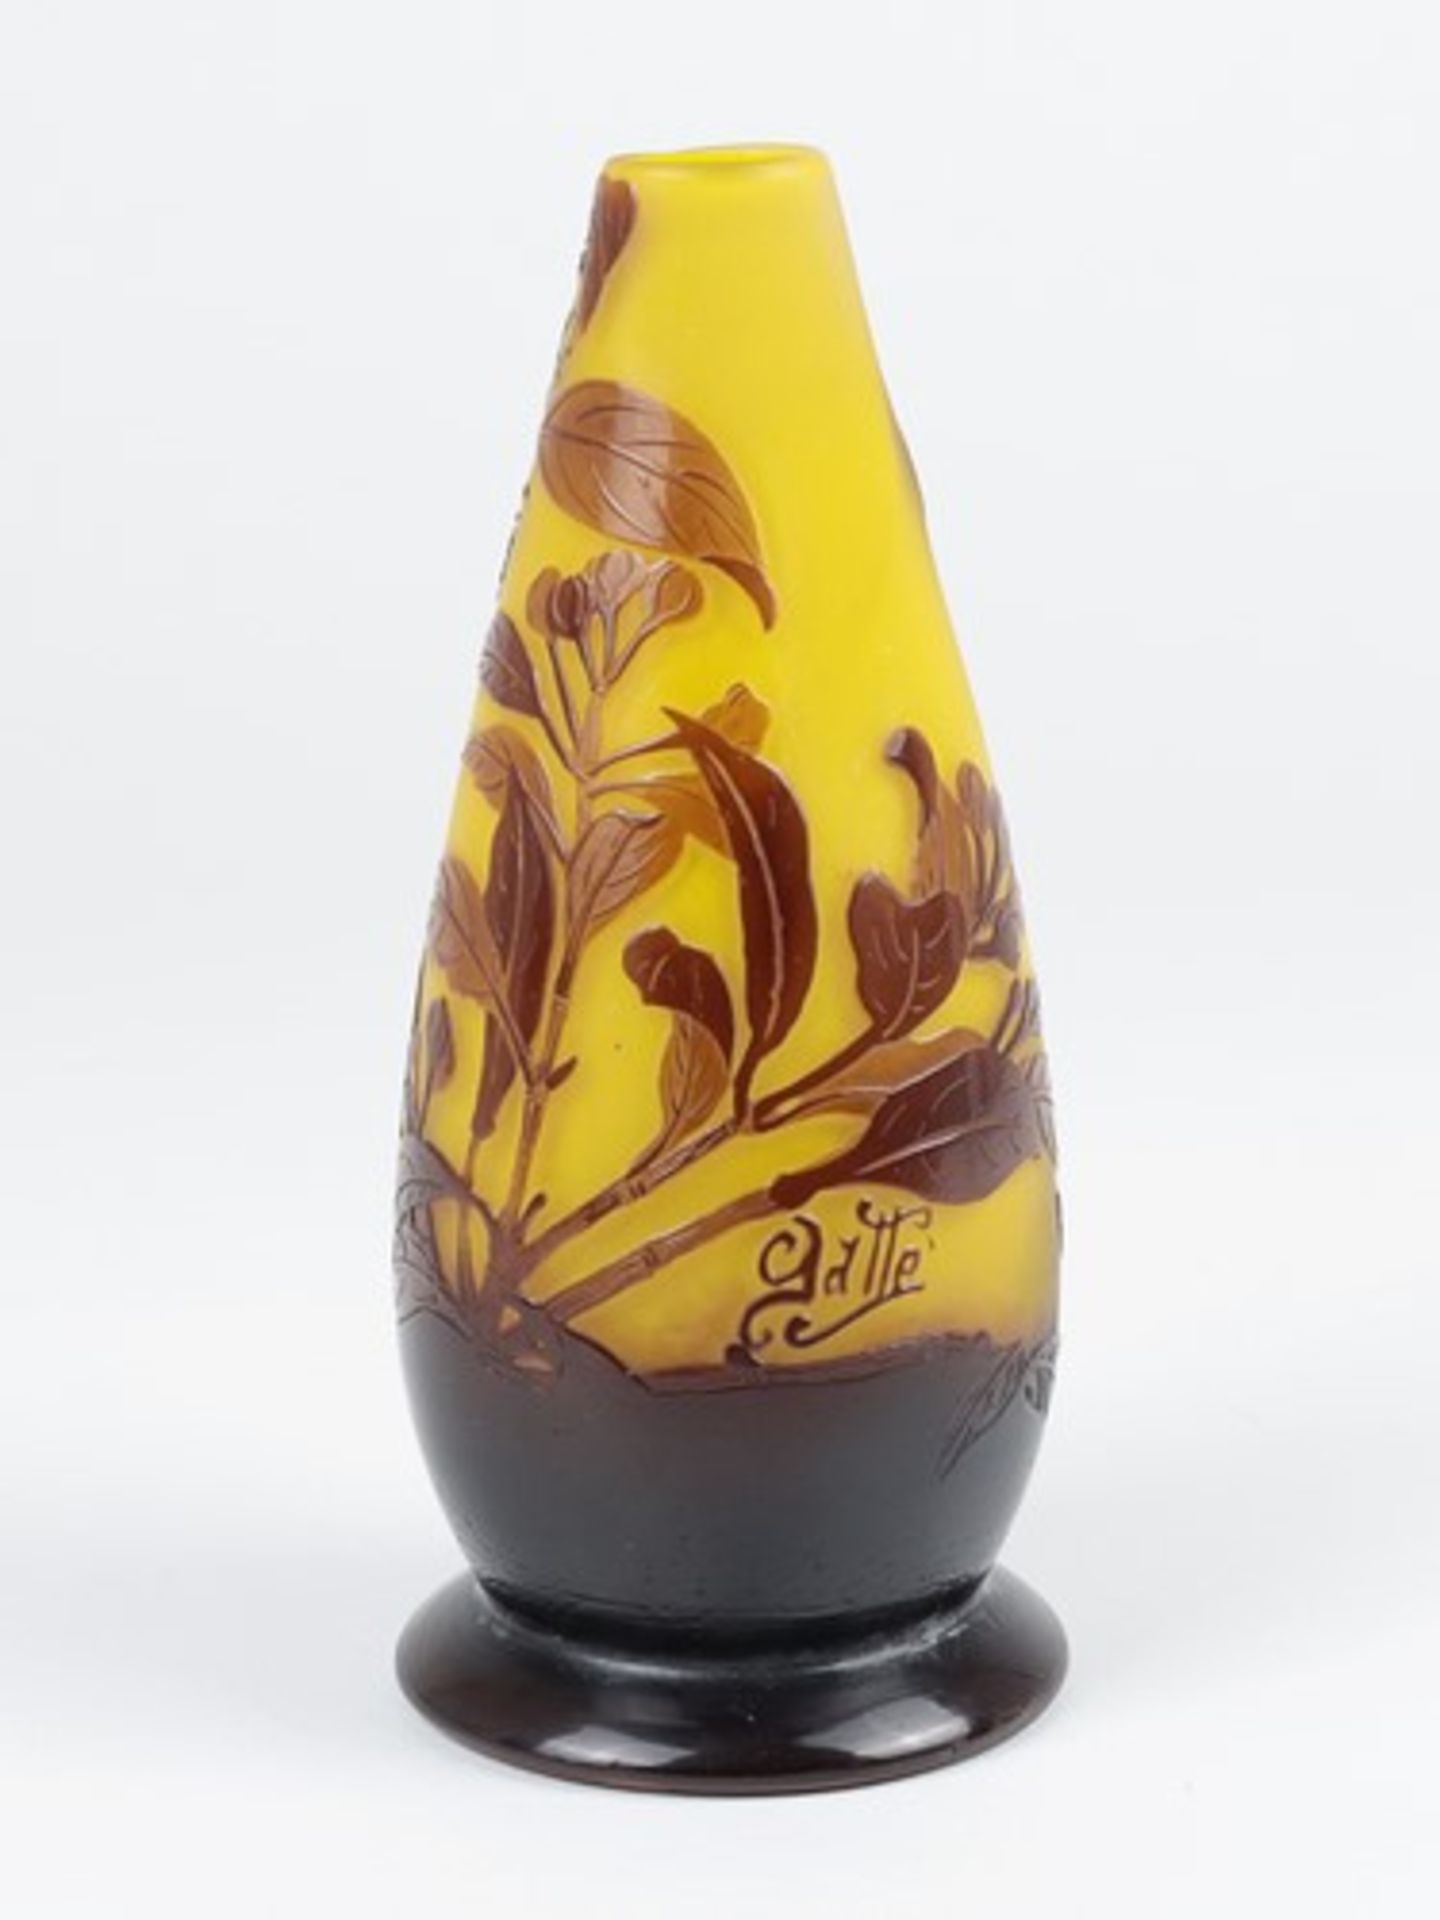 Gallé - Vase um 1900, Jugendstil, Emile Gallé, Frankreich, farbloses mattiertes Glas, runder Stand,